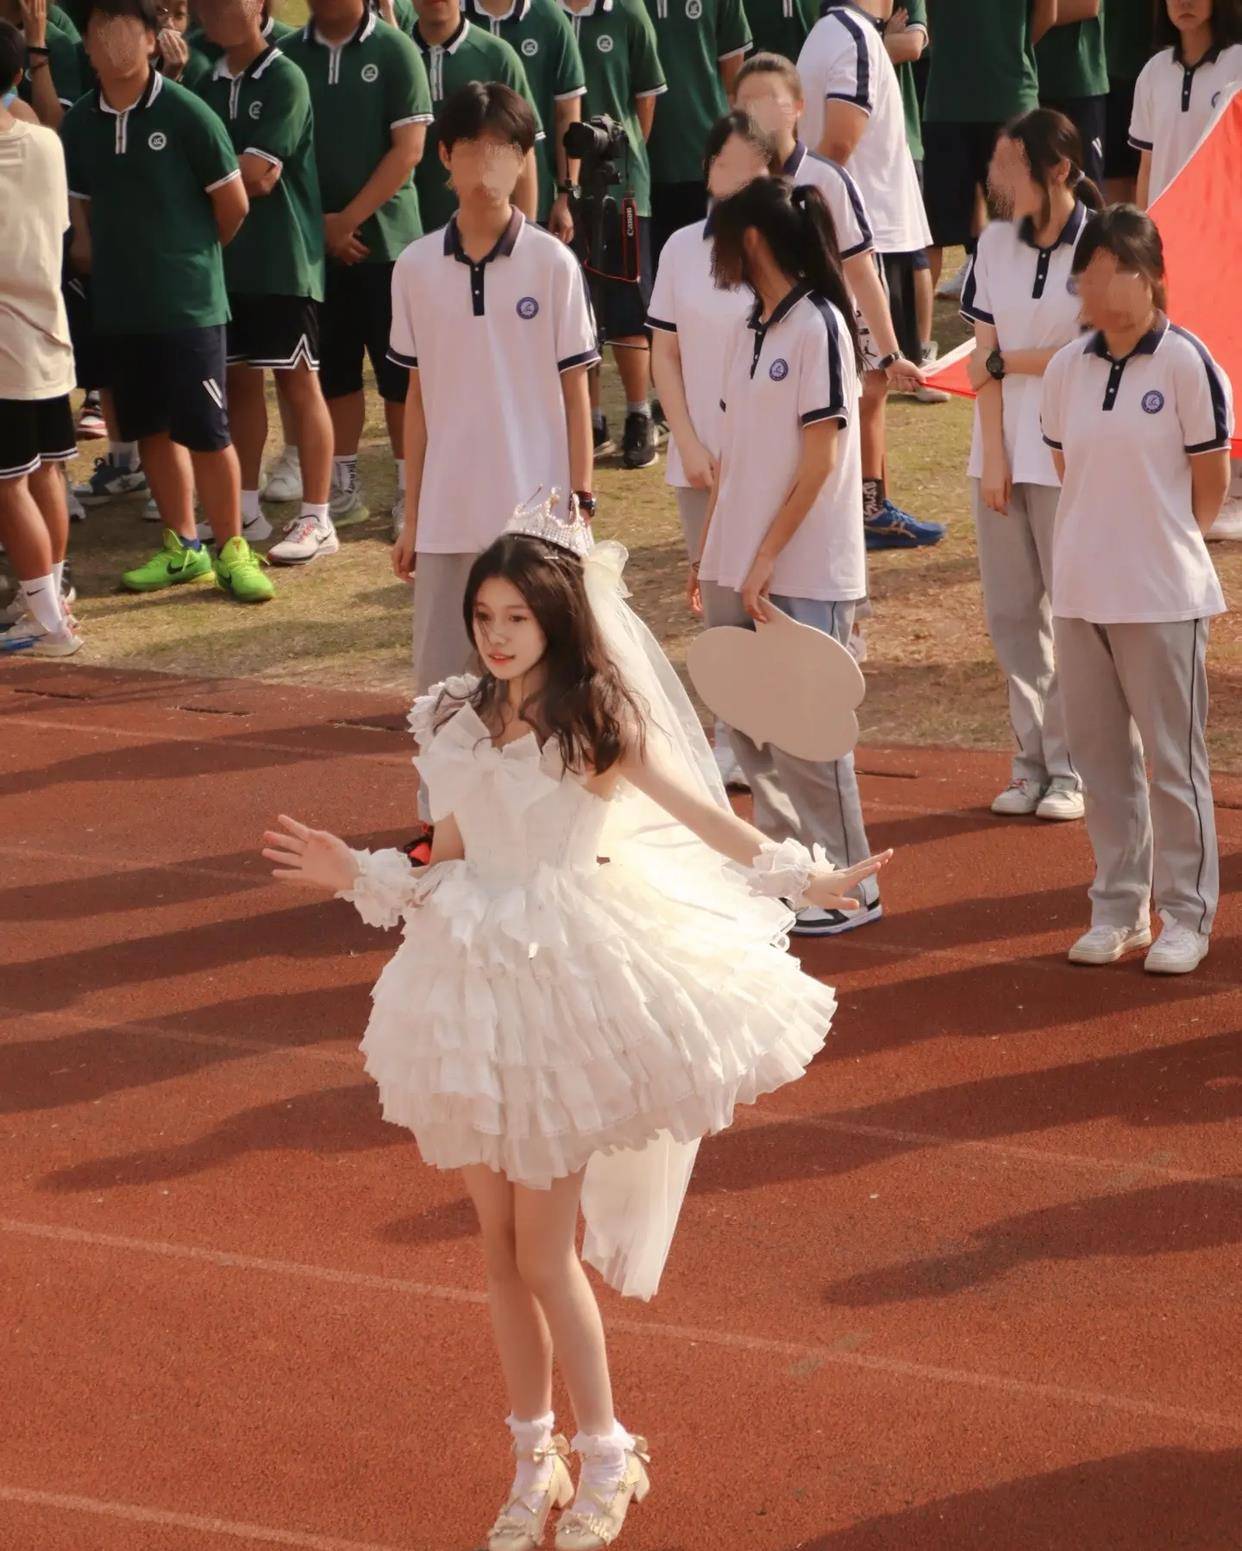 Nữ sinh bất ngờ nổi tiếng khi diện váy công chúa trong hội thao của trường: Nhan sắc quá xinh sáng bừng cả góc sân! - Ảnh 1.